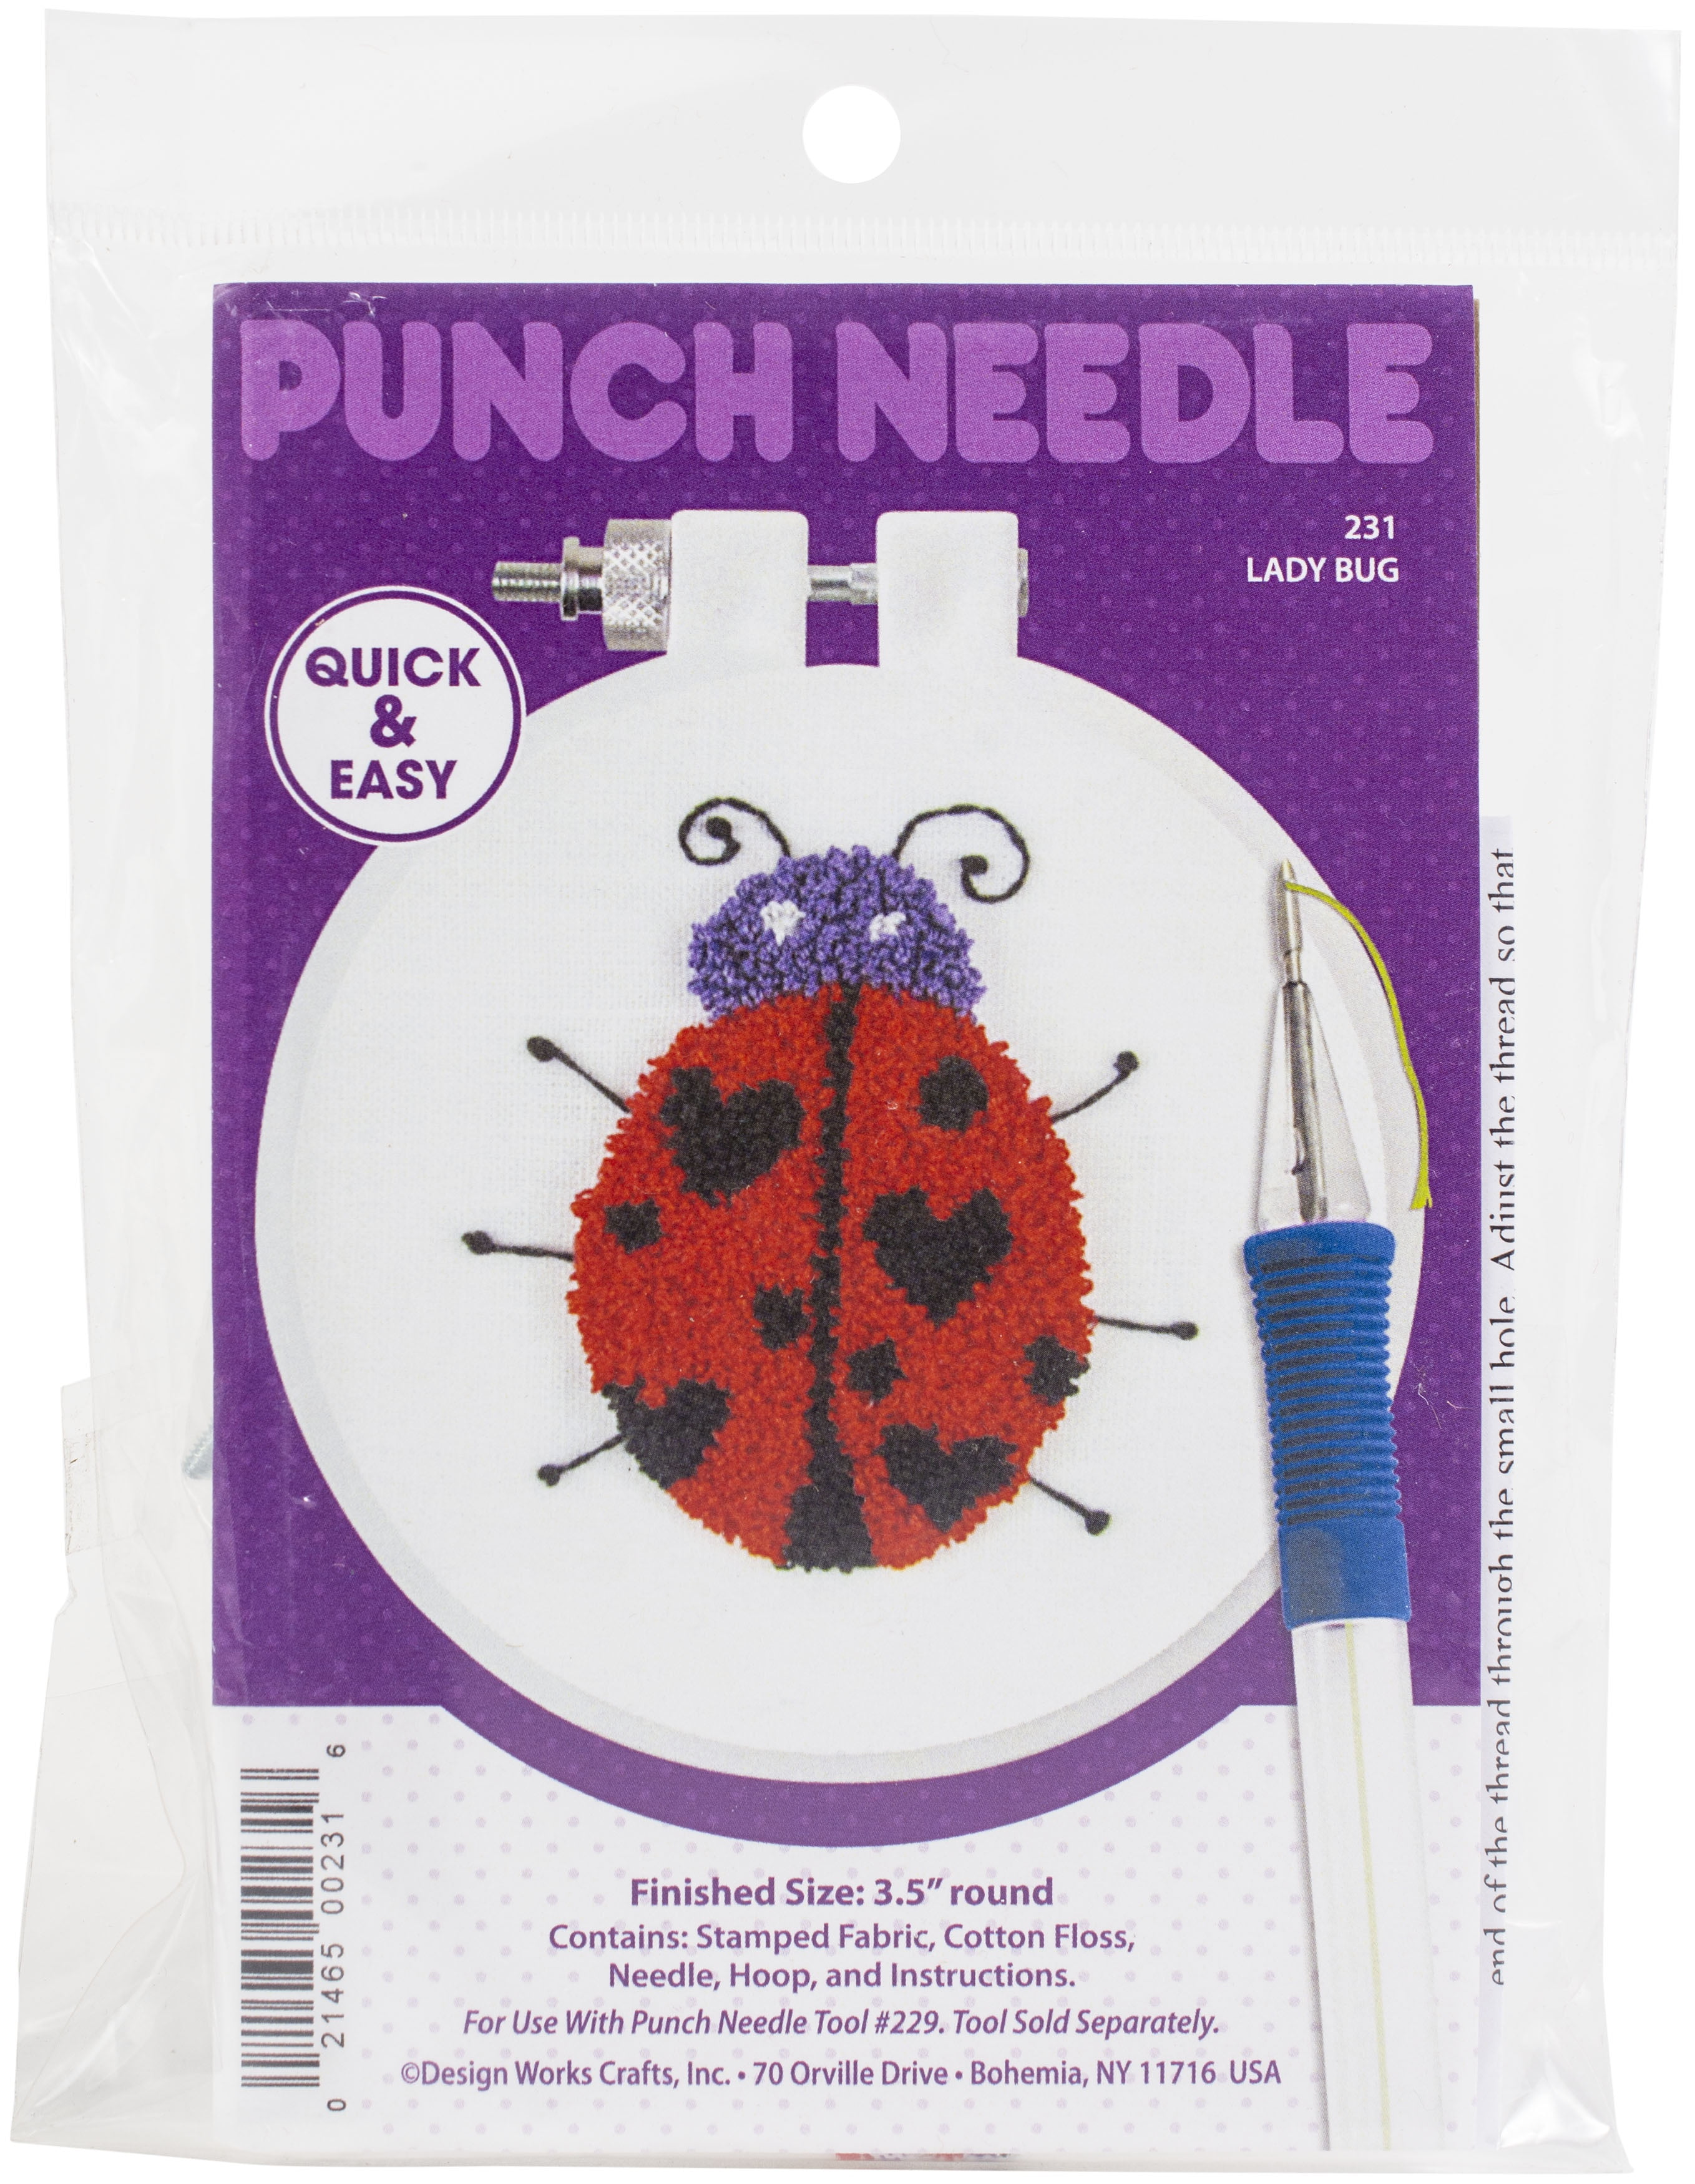 21pc Punch Needle Embroidery Kits Adjustable Punch Needle Tool, Wooden Handle Embroidery Pen, Bamboo Hoops, Punch Needle Cloth, Big Eye Needles